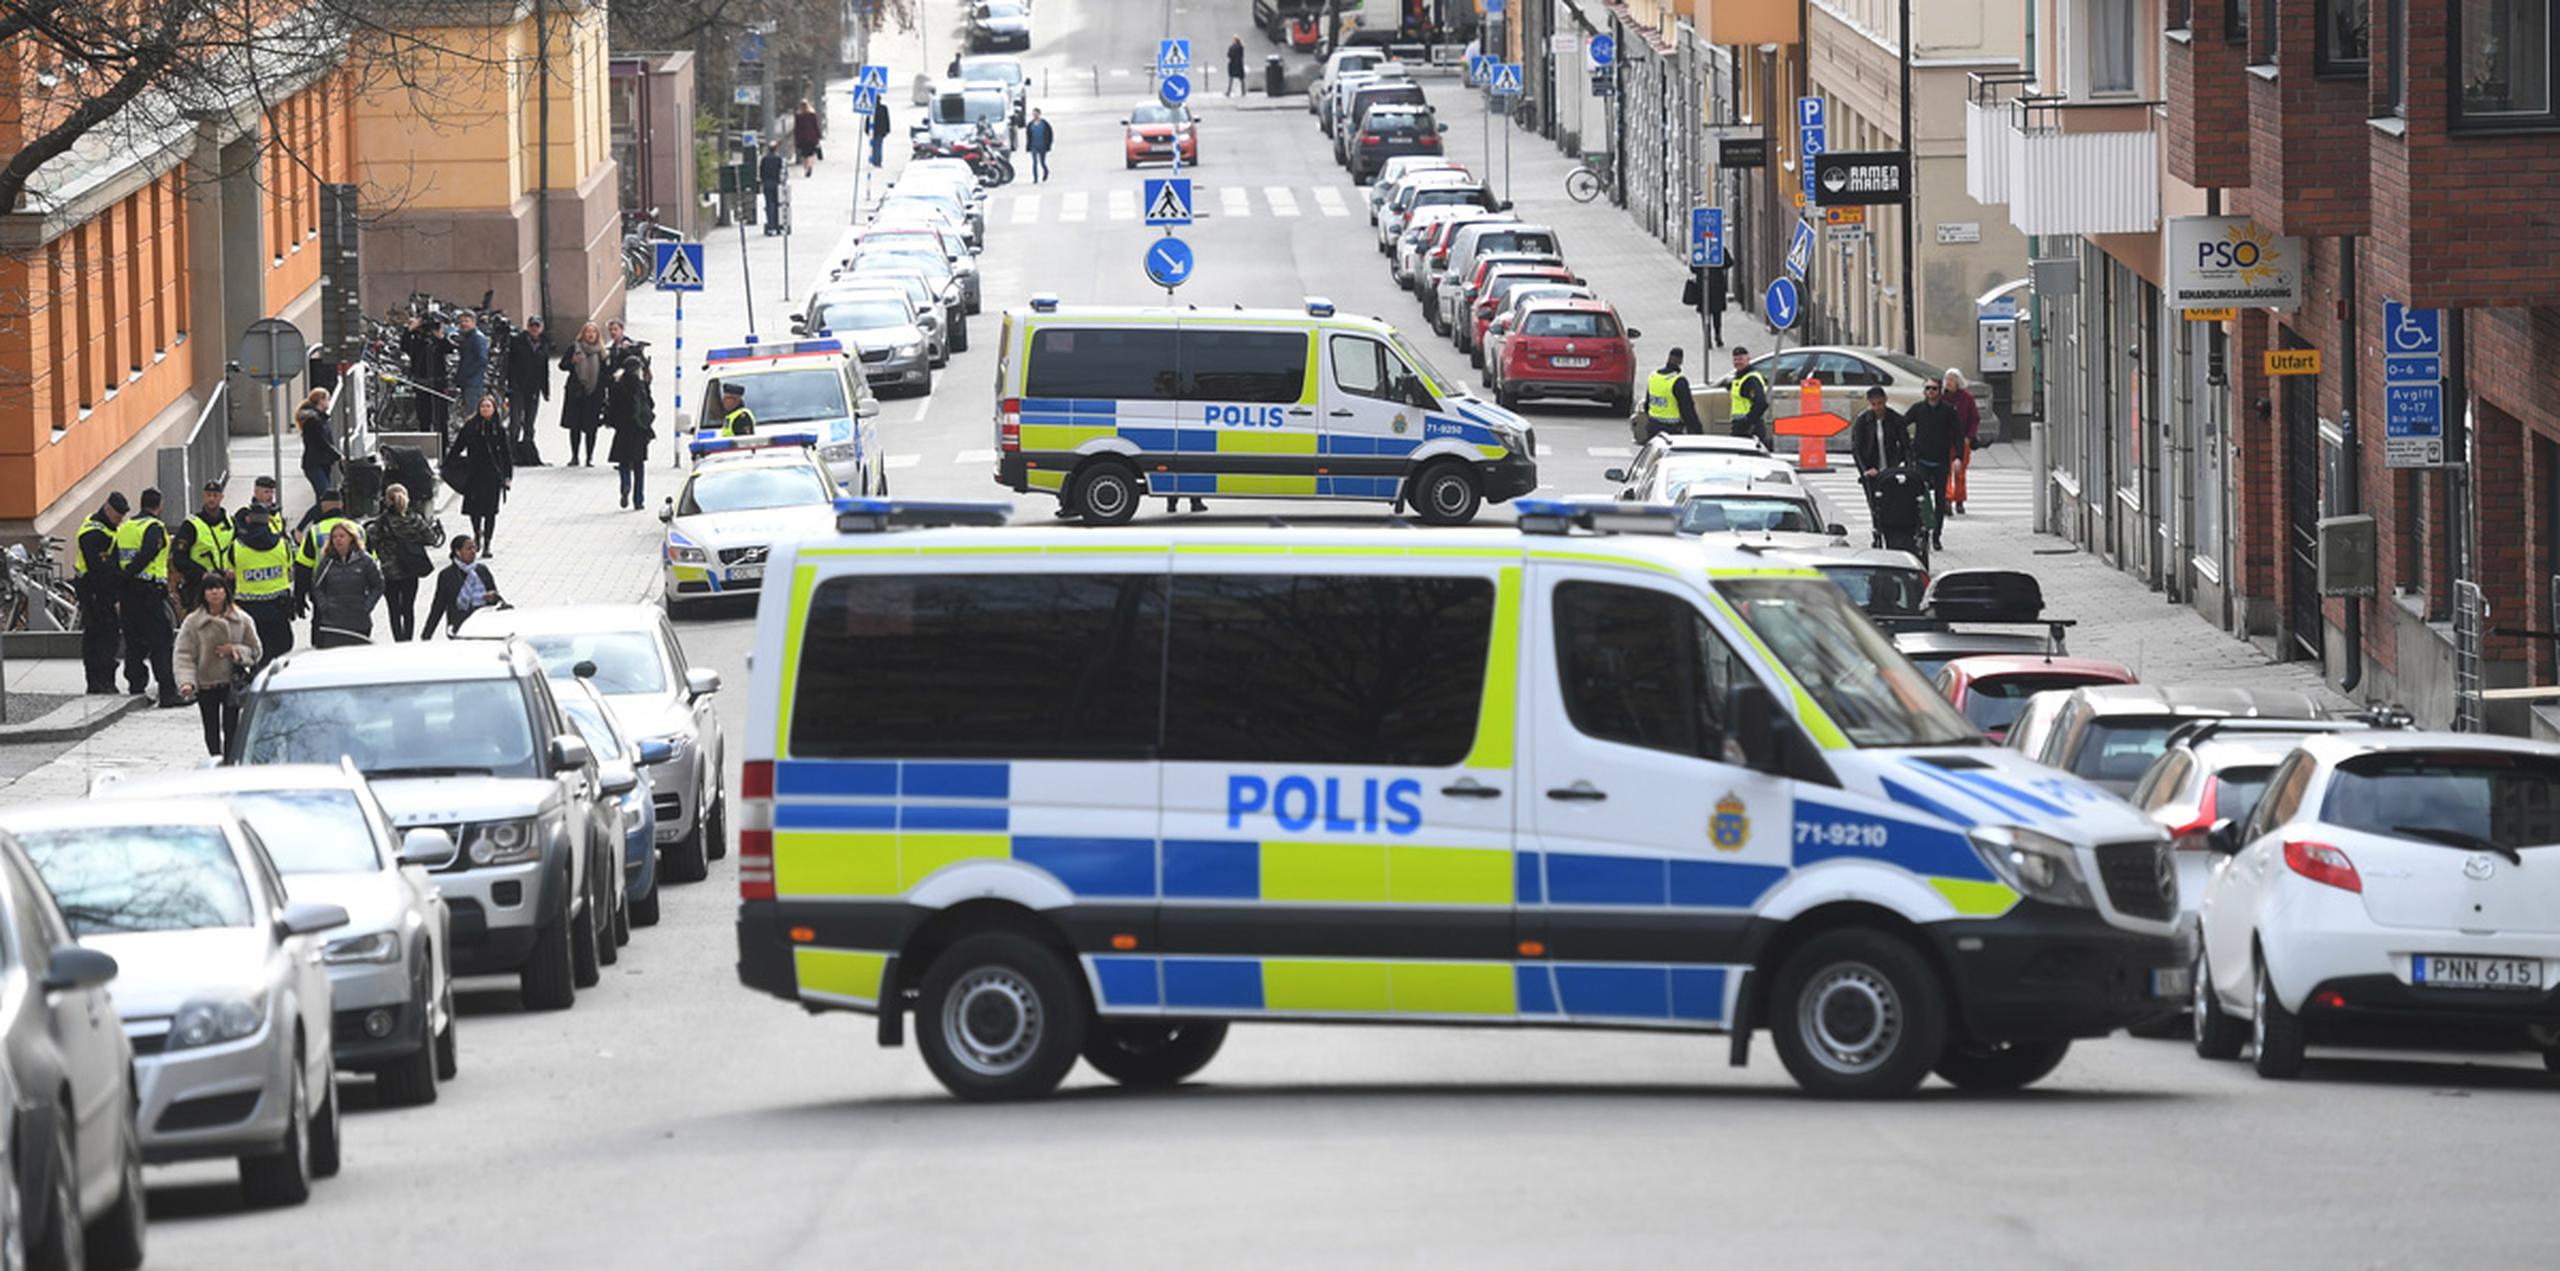 El hombre es sospechoso de haber conducido el camión que el viernes por la tarde recorrió casi 600 metros de la principal calle peatonal de Estocolmo atropellando a viandantes hasta estrellarse contra la fachada de unos grandes almacenes. (AP)